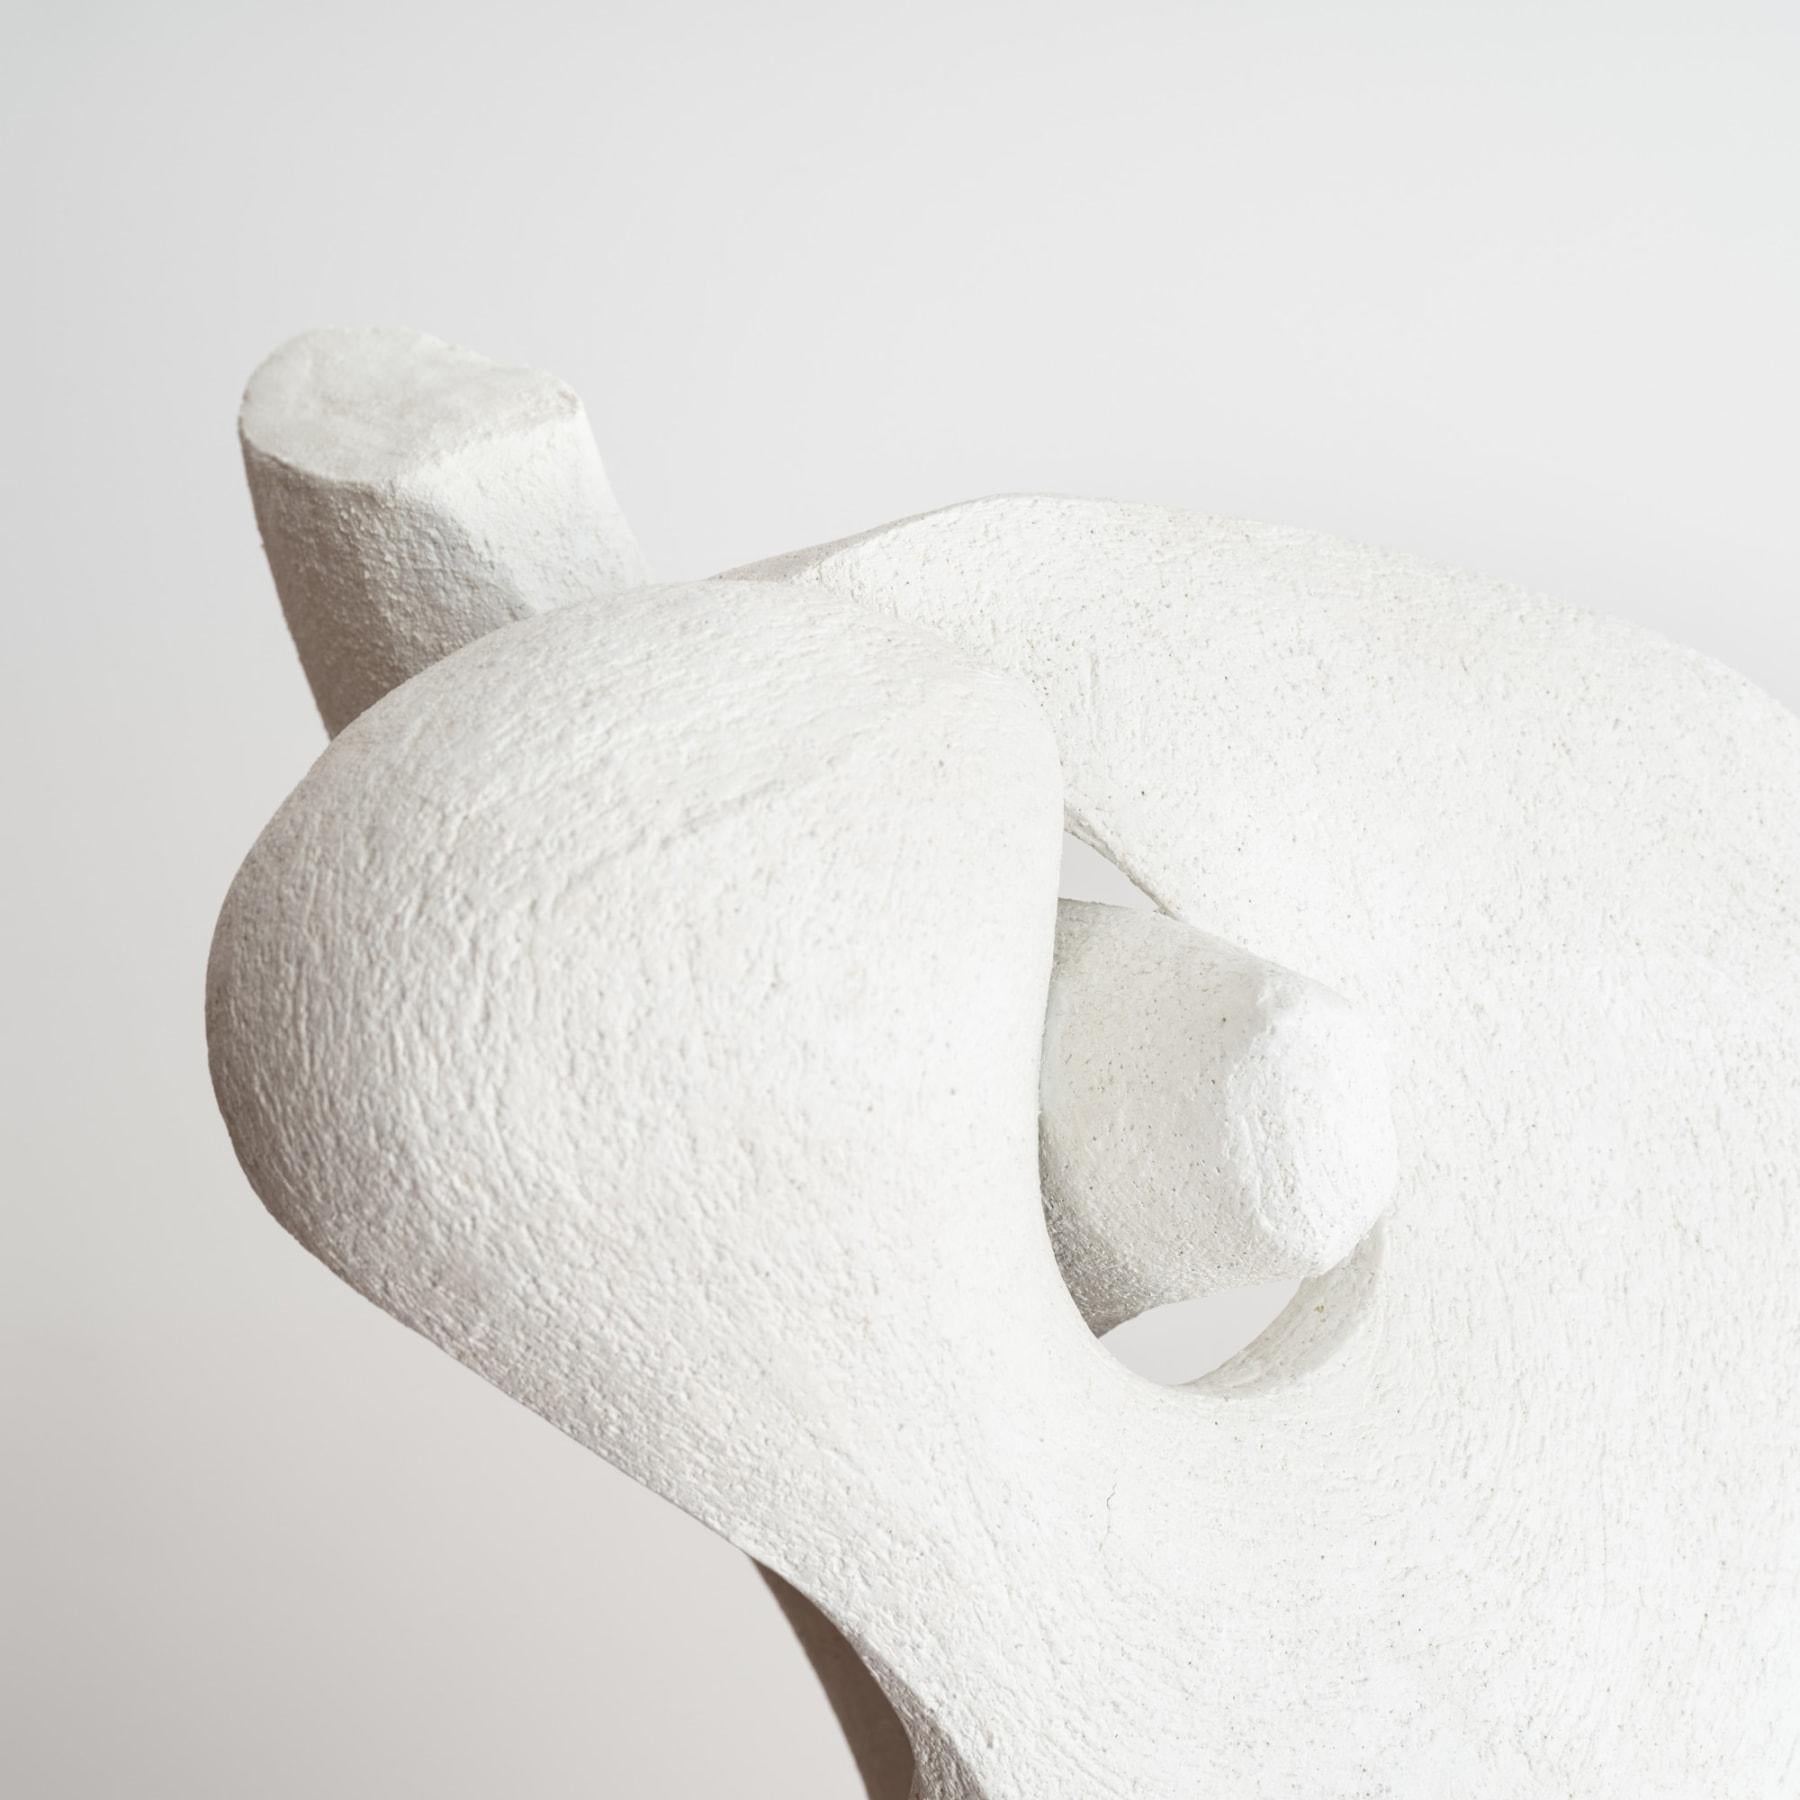 American Contemporary White Ceramic Sculpture in Organic Calla Lily Form For Sale